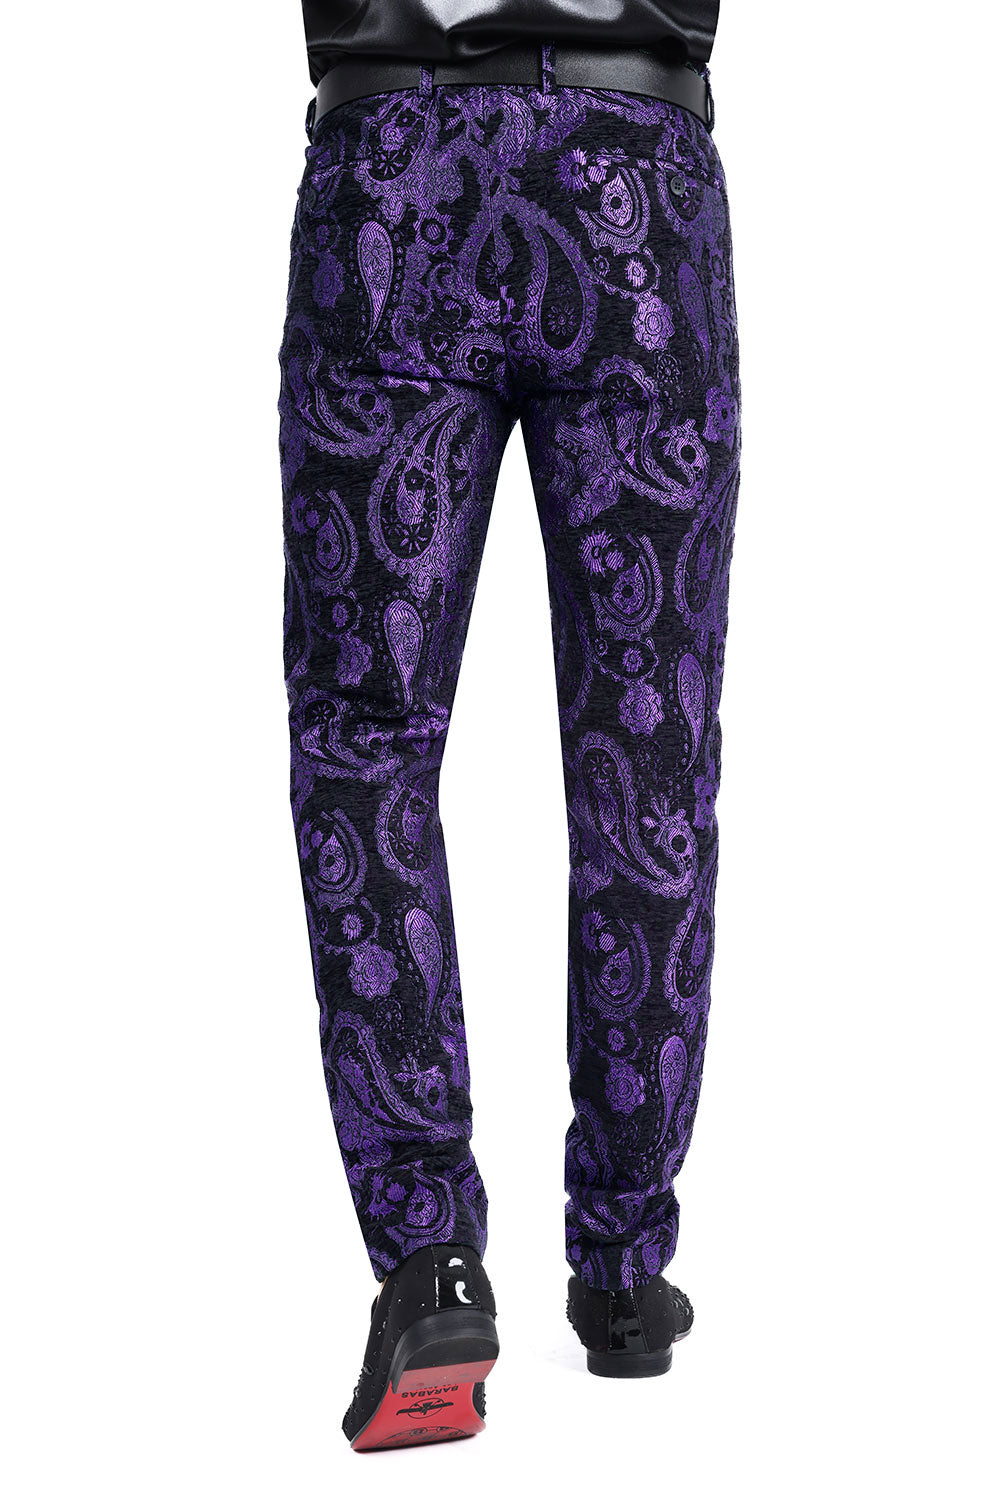 Barabas Men's Paisley Floral Print Design Luxury Pants 2CP3101 Purple Black